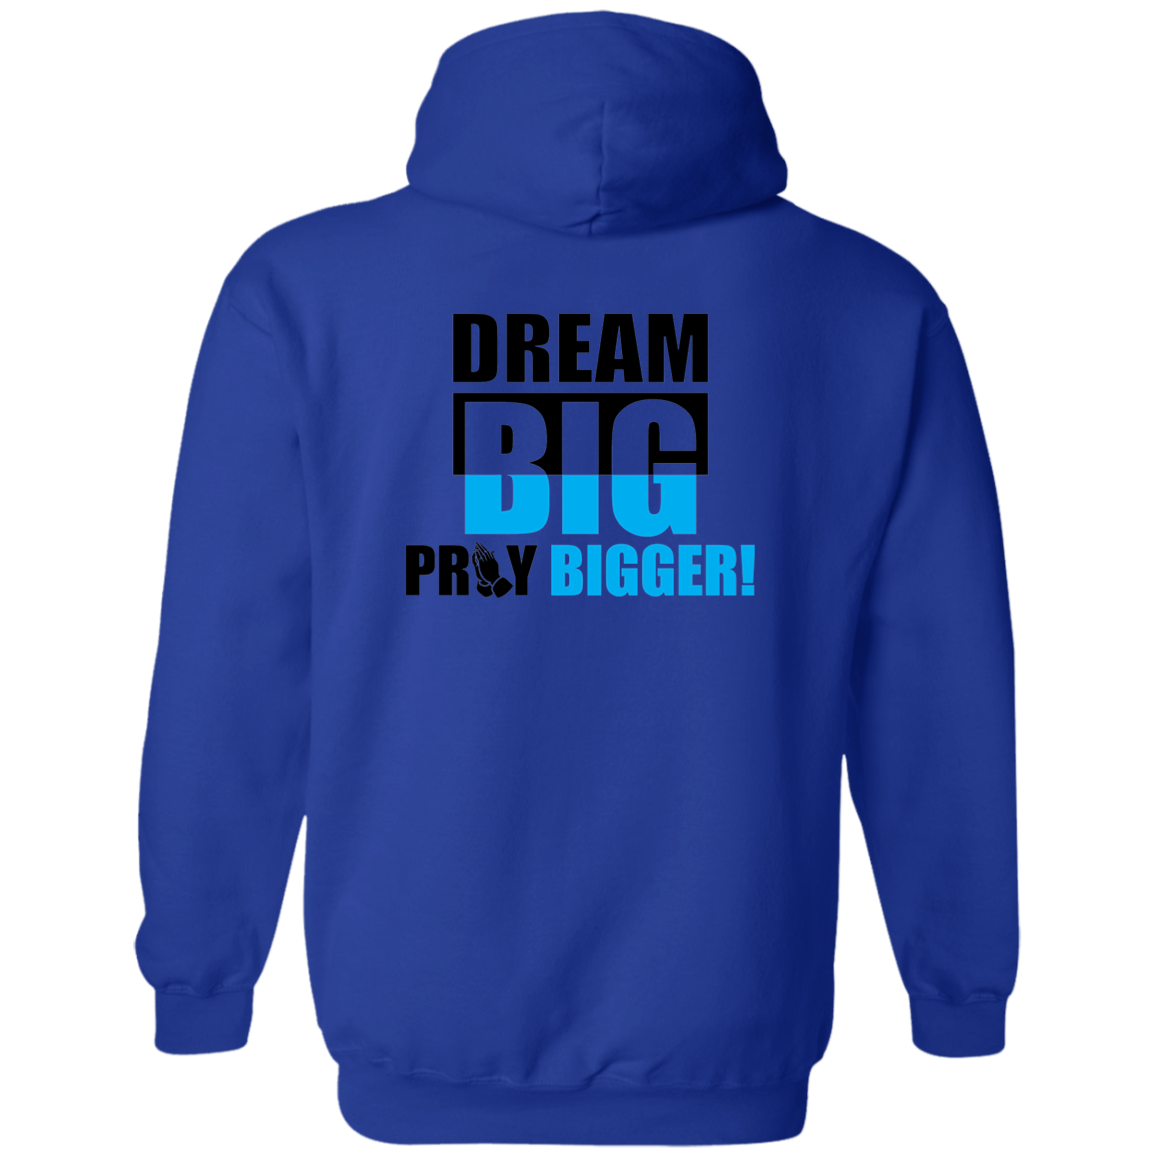 DREAM BIG PRAY BIGGER Zip Up Hooded Sweatshirt